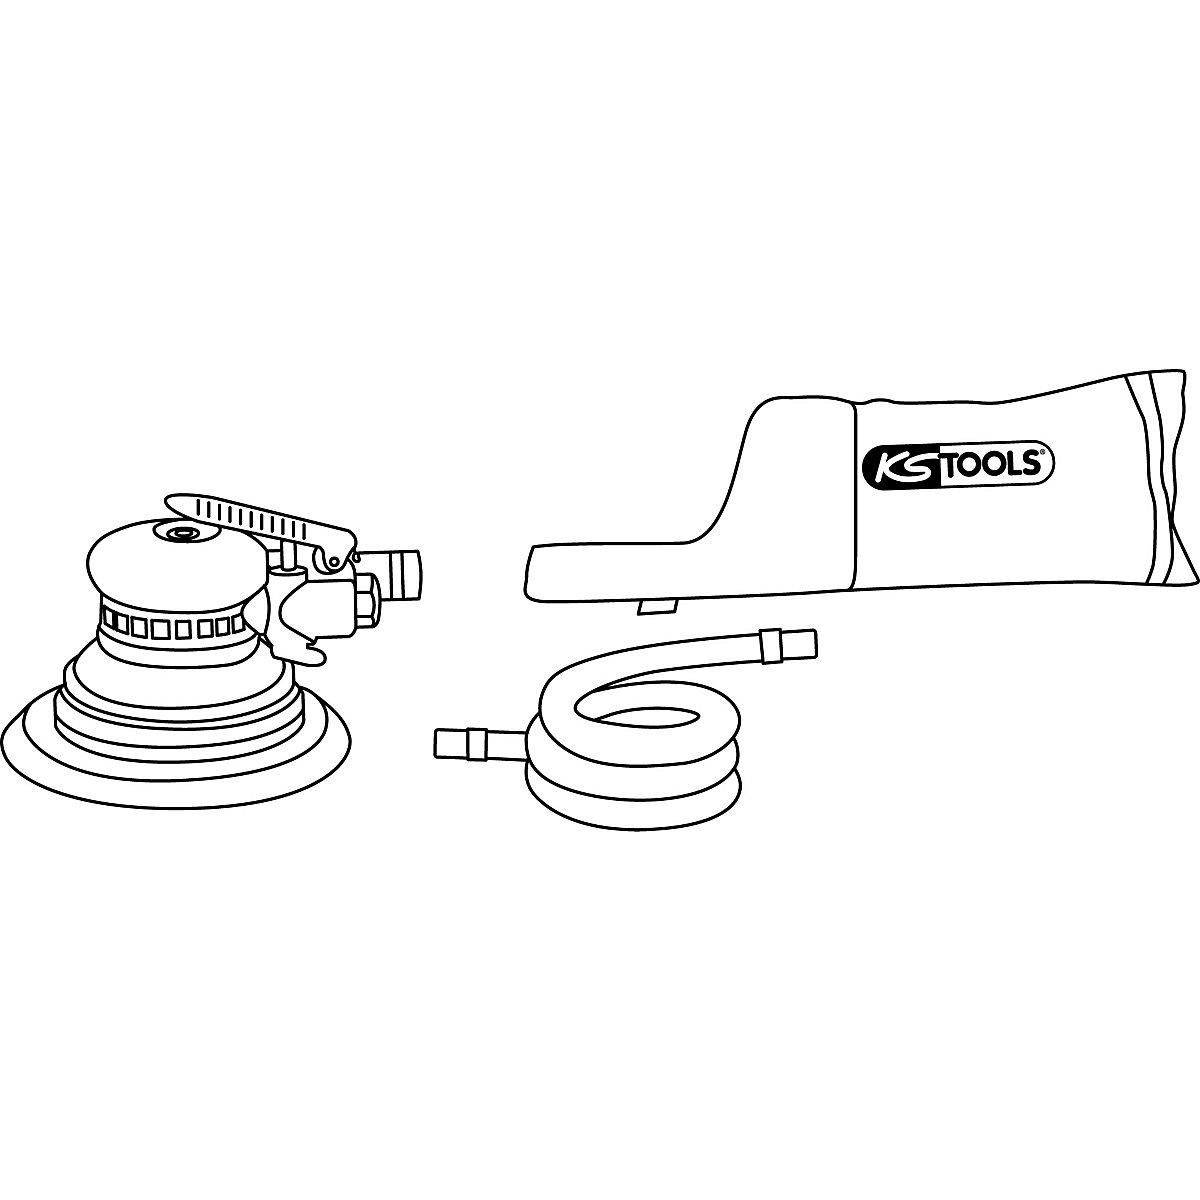 Pnevmatski ekscentrični brusilnik z odsesavanjem prahu – KS Tools (Slika izdelka 2)-1